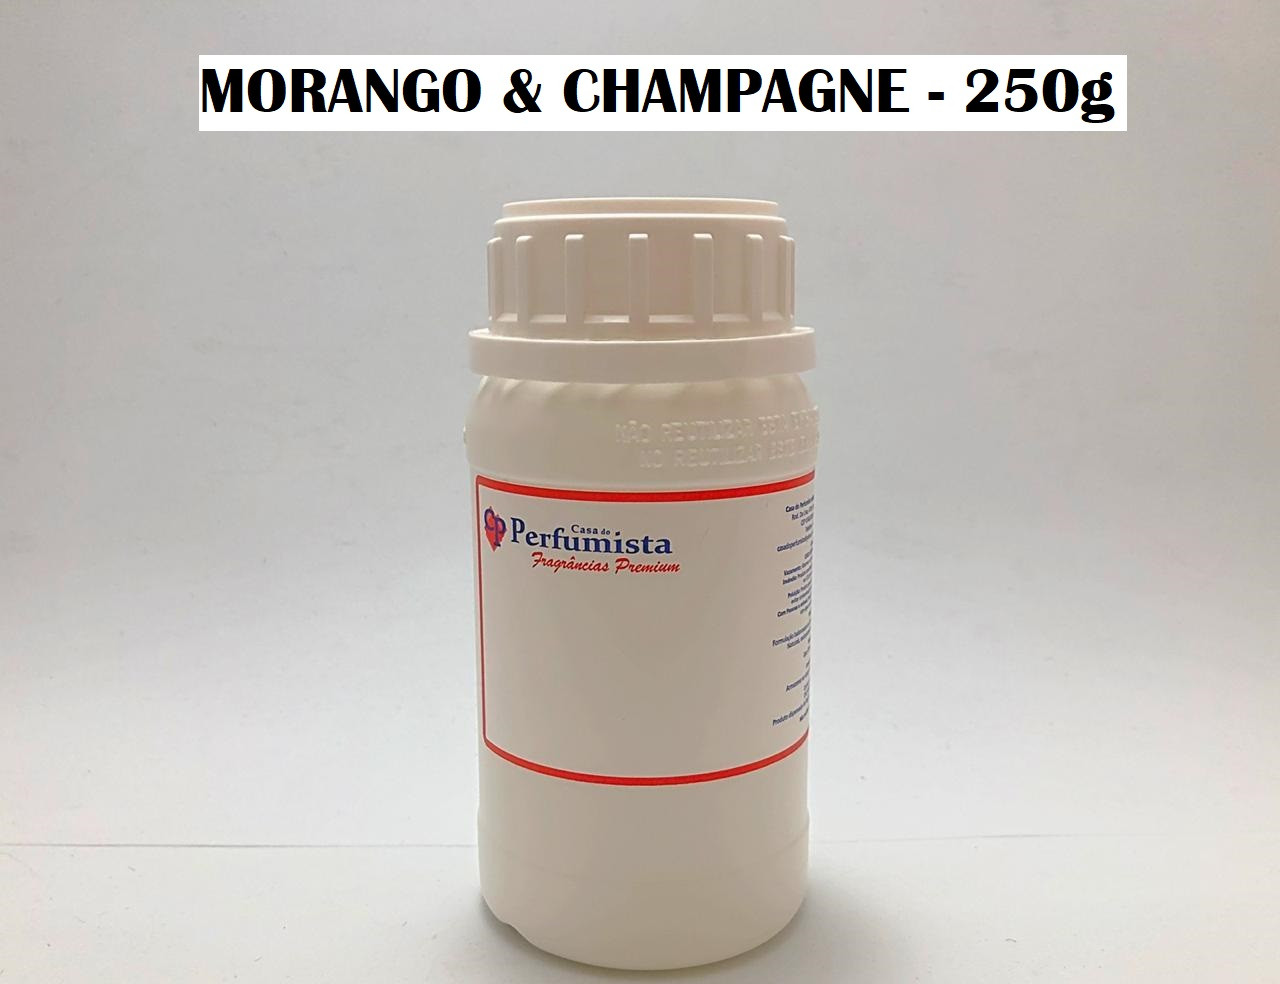 MORANGO E CHAMPAGNE - 250g